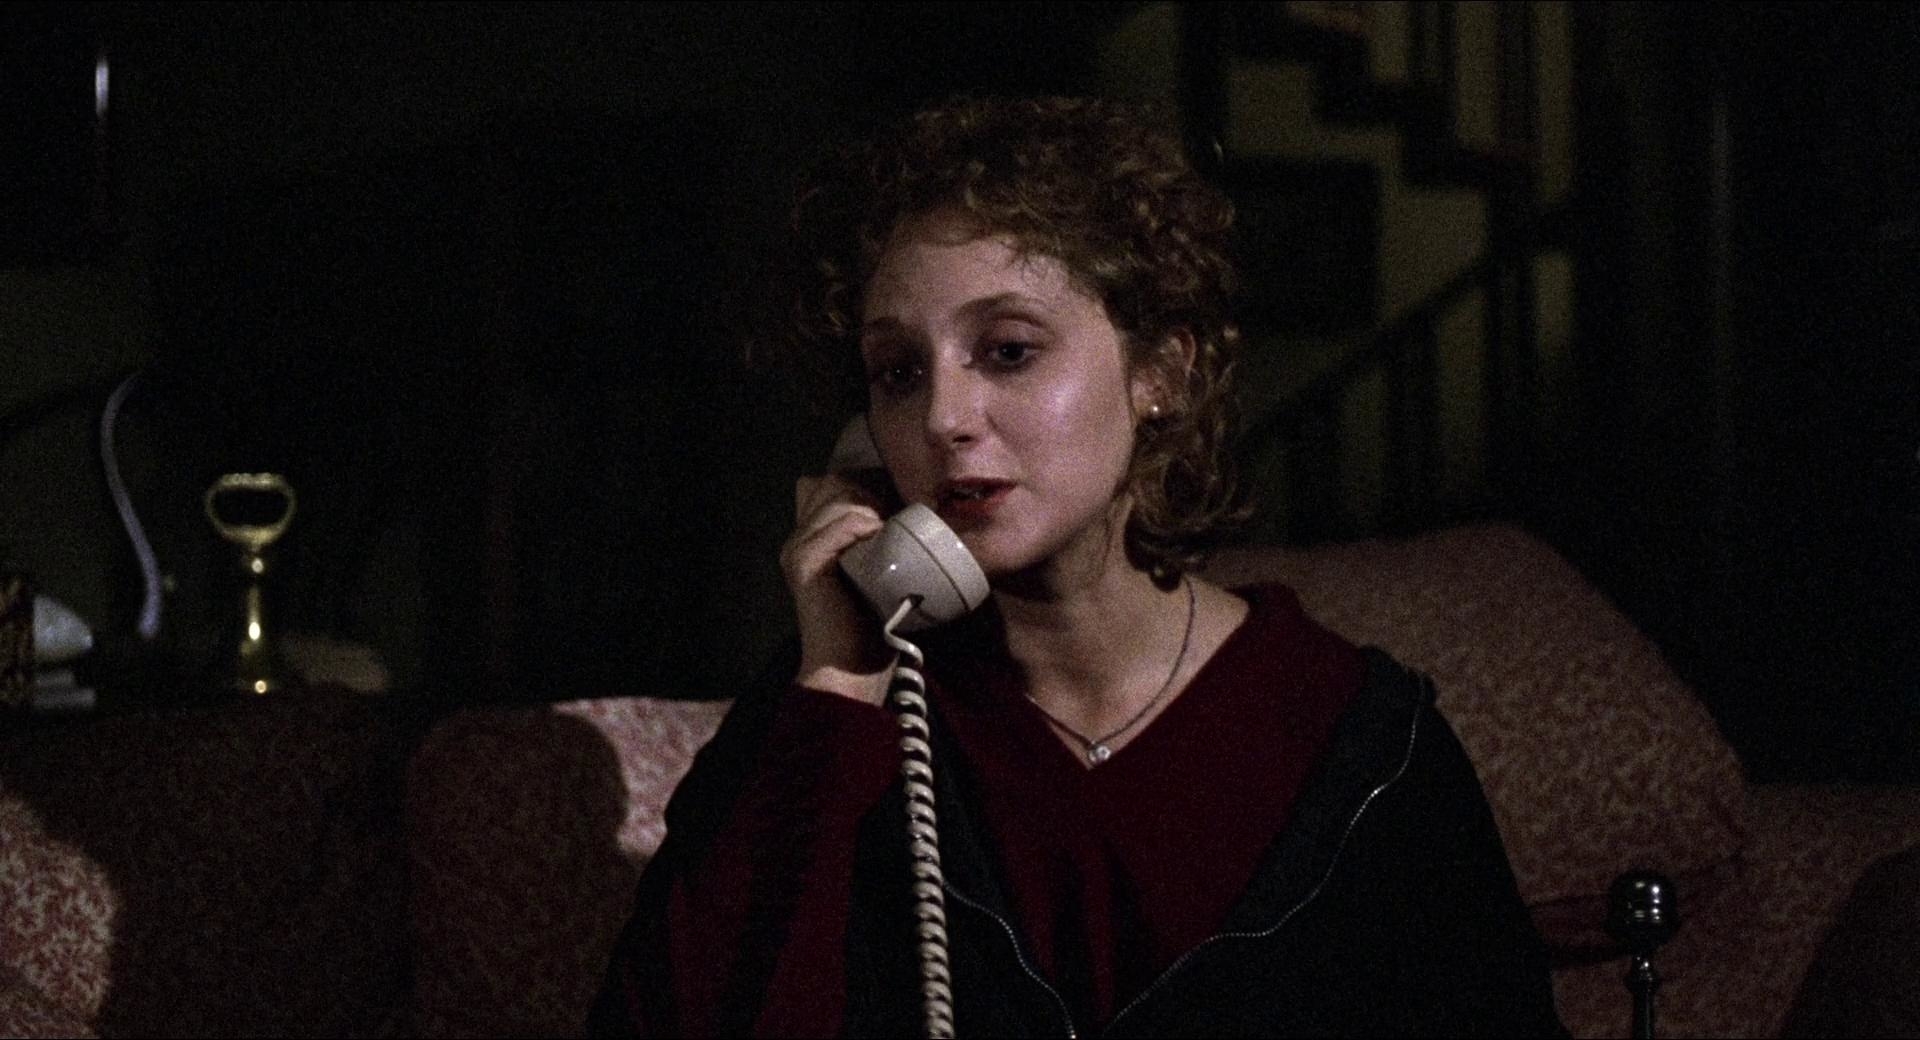 Carol Kane holding a landline phone.